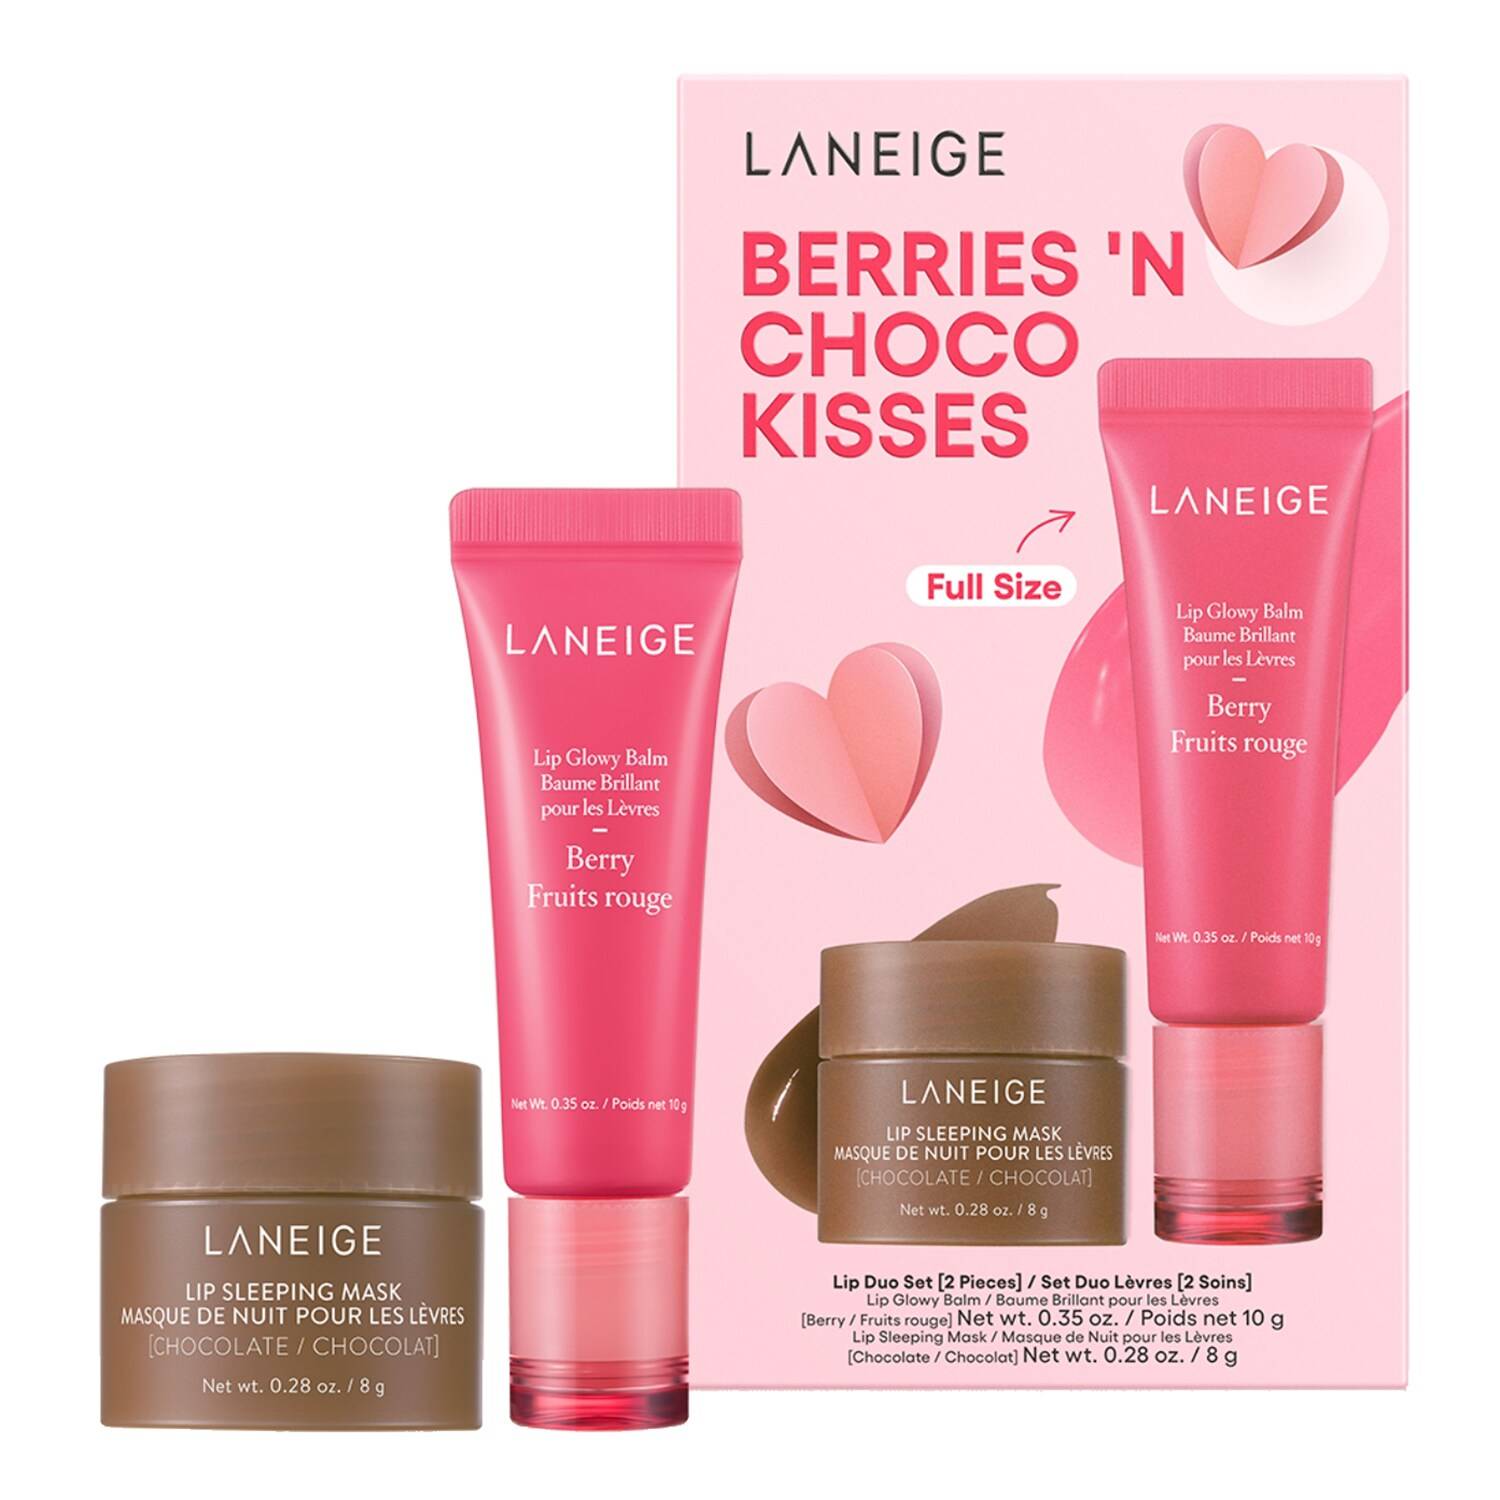 LANEIGE Berries 'N Choco Kisses Lip Duo